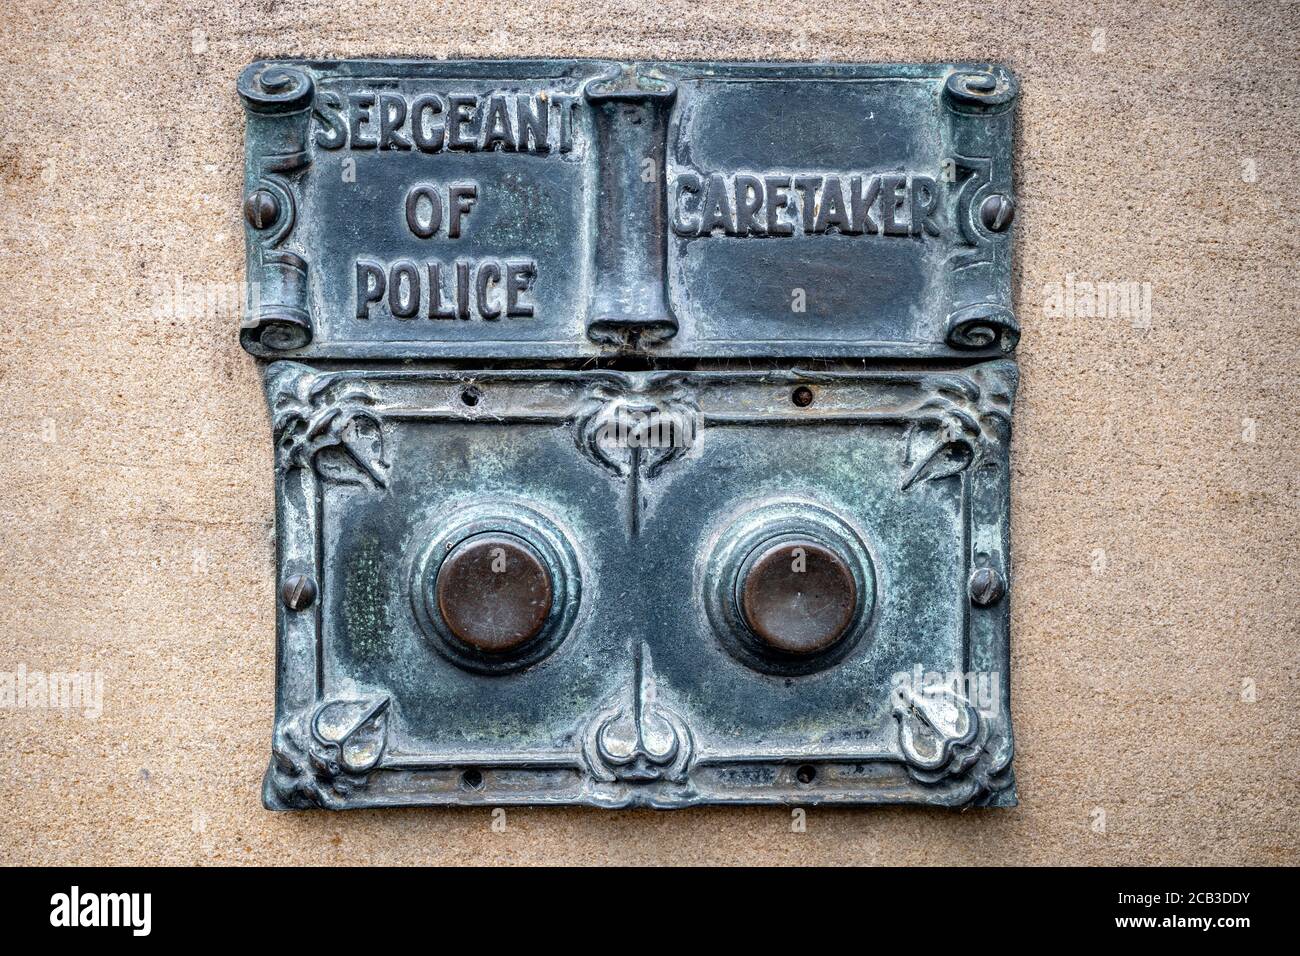 Door Bells for Sergeant of Police and Caretaker in Edinburgh, Scotland, UK. Stock Photo